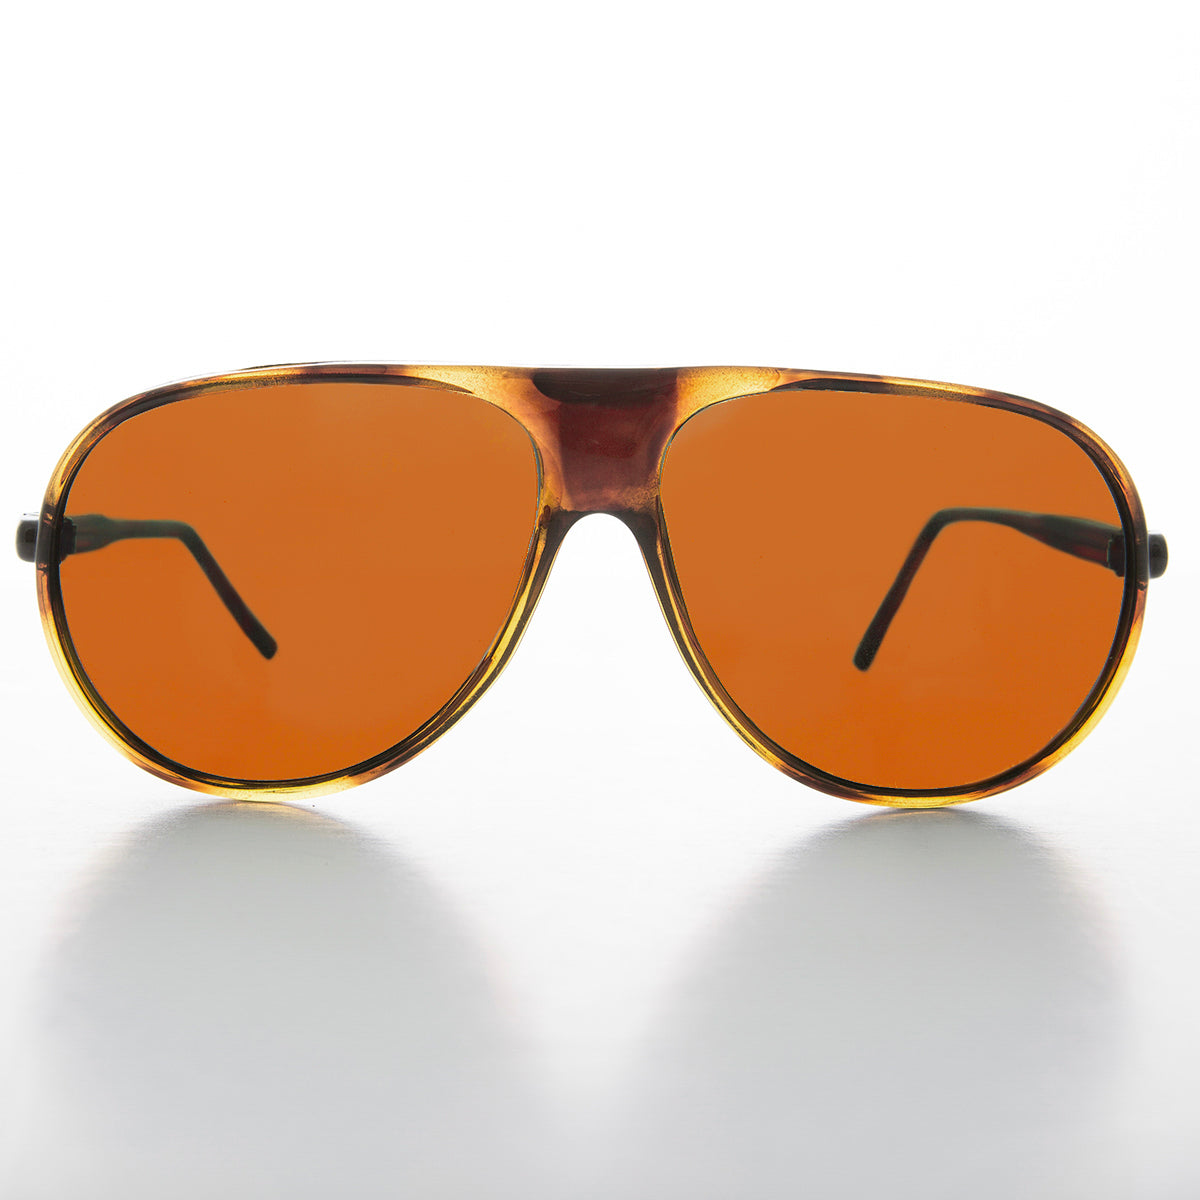 Pilot Sunglasses with Orange Lenses